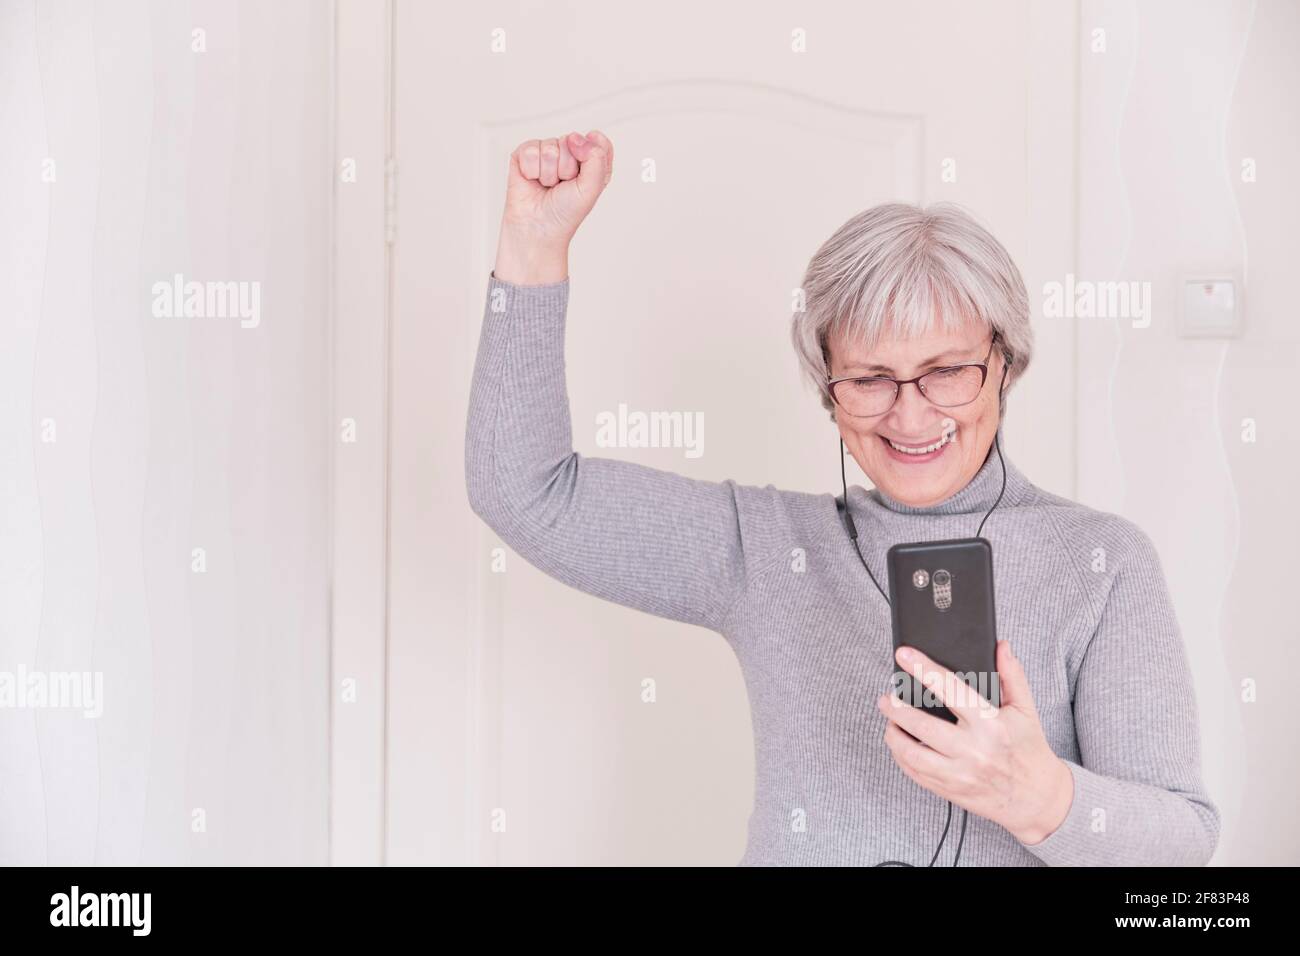 Eine grauhaarige ältere Frau mit Brille, in Kopfhörern, in einem grauen Rollkragen, die zu Hause auf das Smartphone schaut und Freude hat. Lifestyle-Moment. Stockfoto